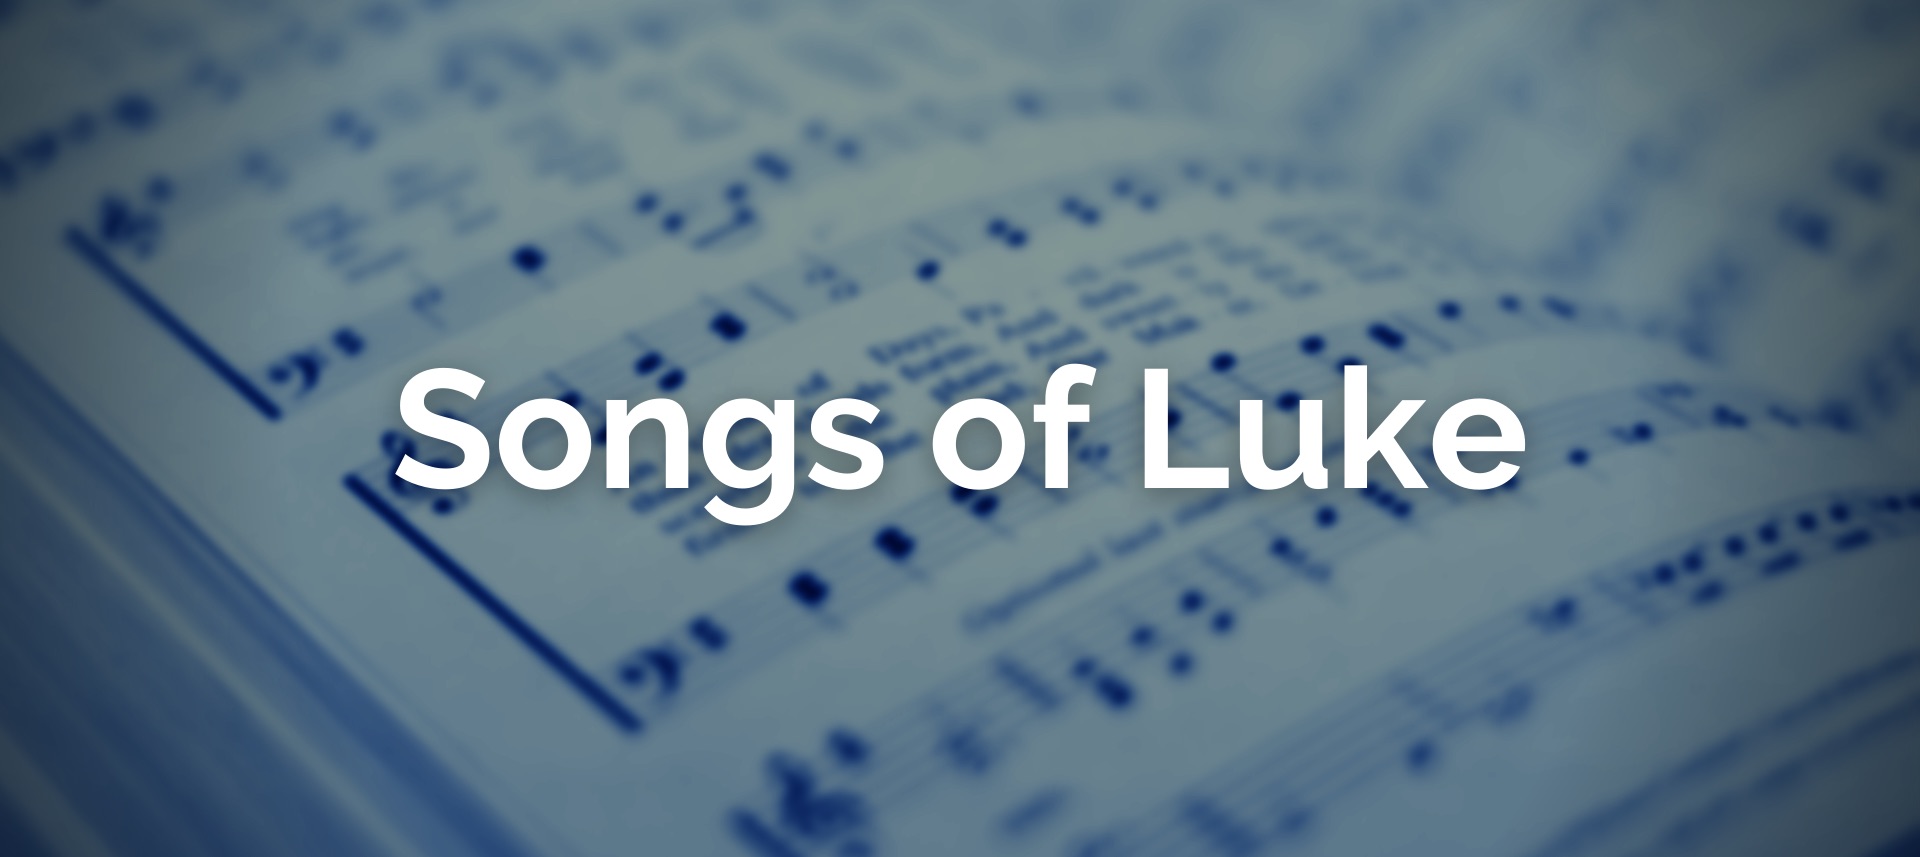 Songs of Luke